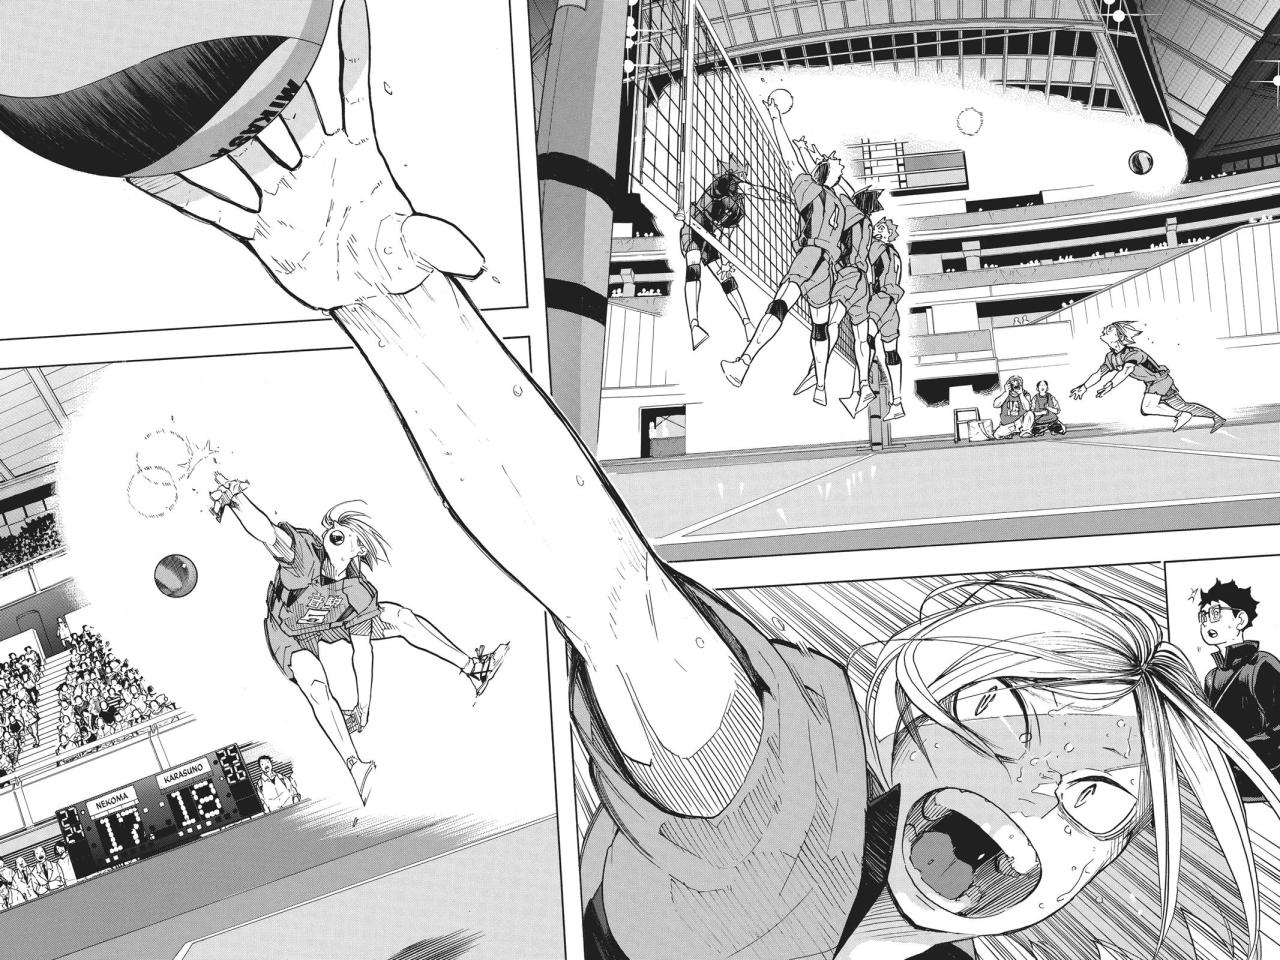 Haikyuu!! Capítulo 17 - Manga Online